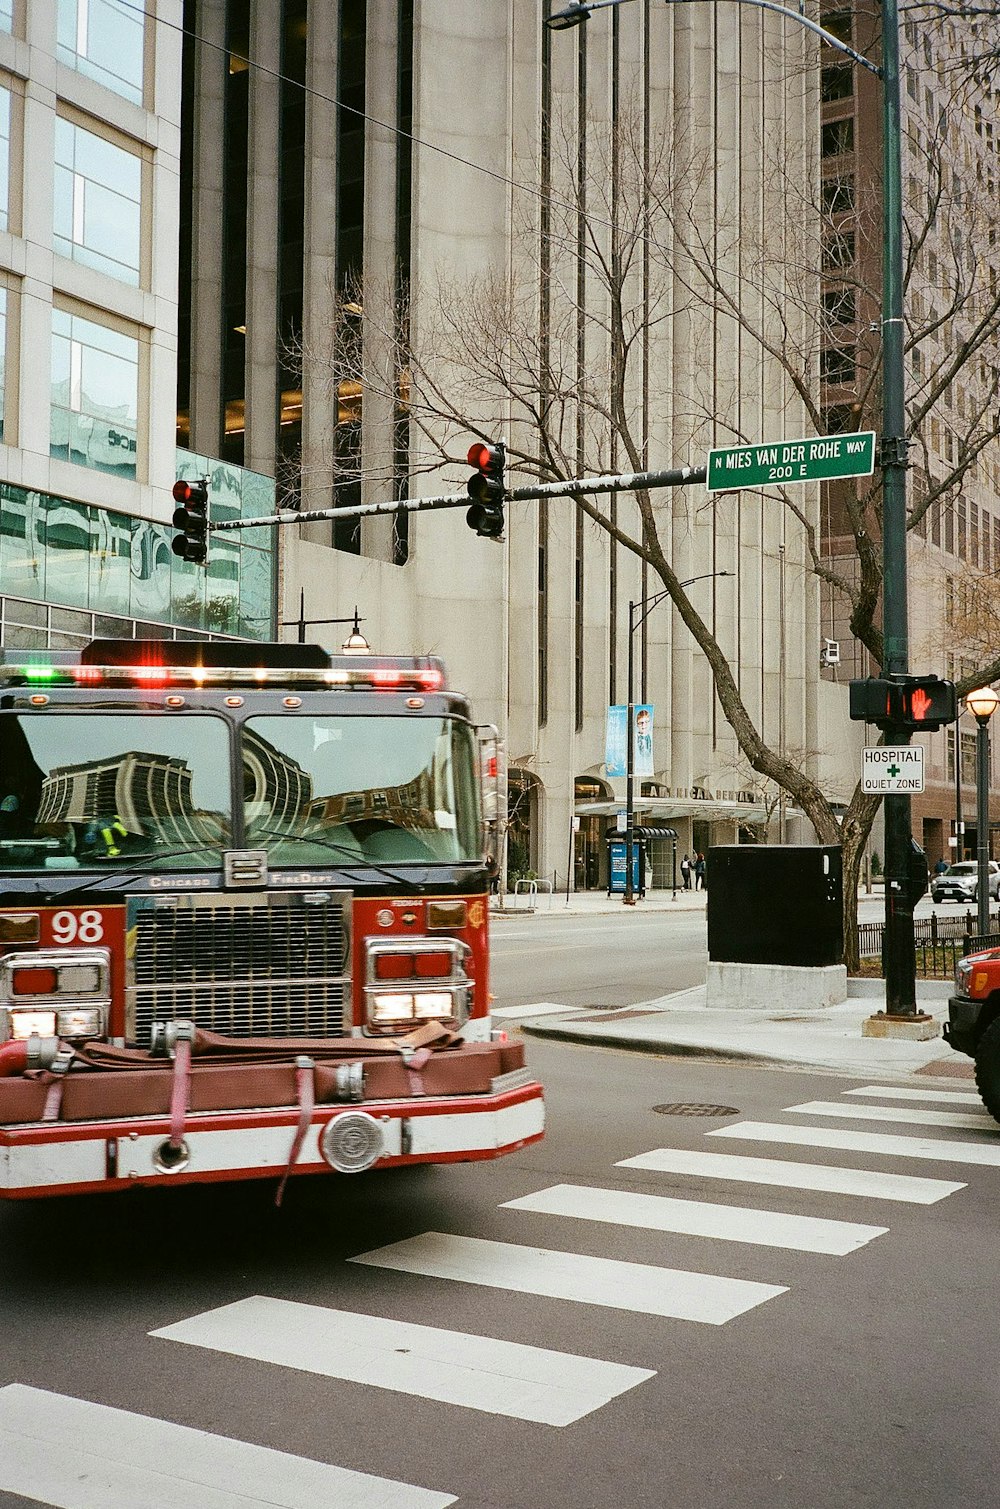 Un camion dei pompieri che percorre una strada vicino a un edificio alto